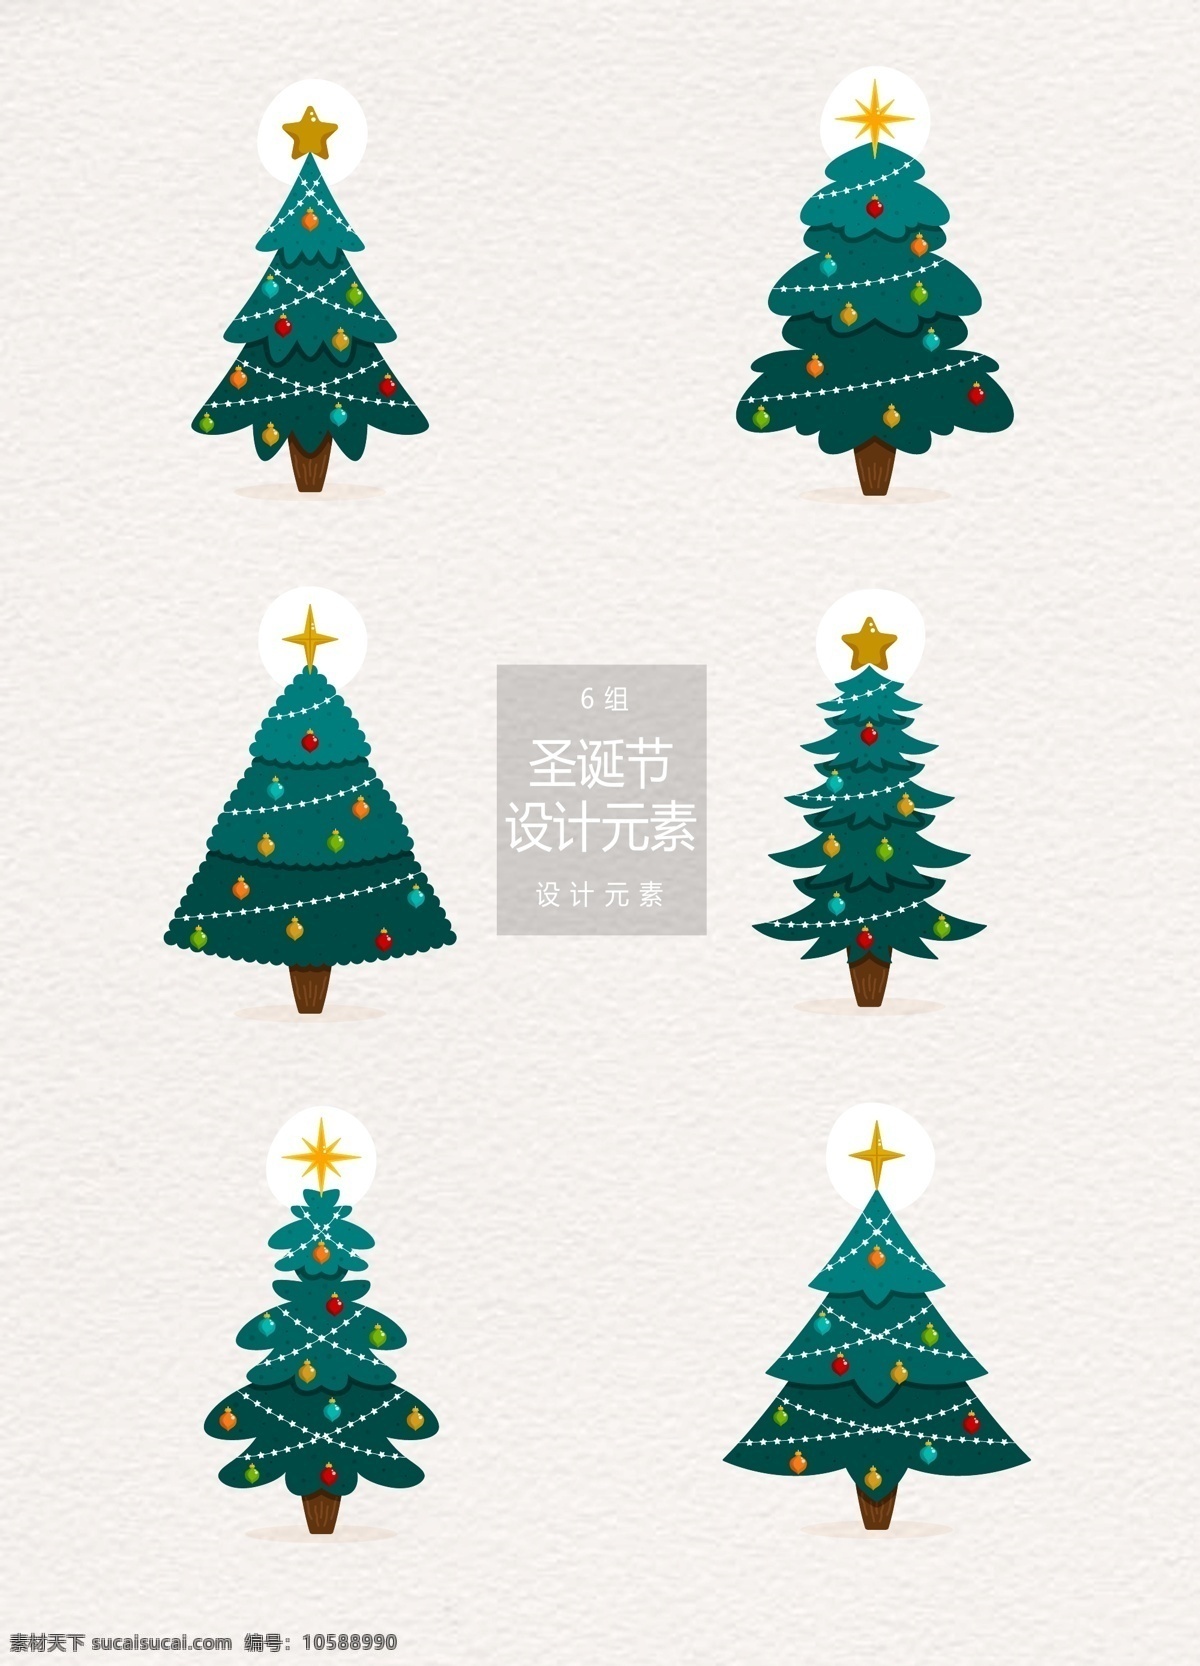 圣诞节 圣诞树 元素 圣诞节元素 树木 矢量素材 圣诞 树